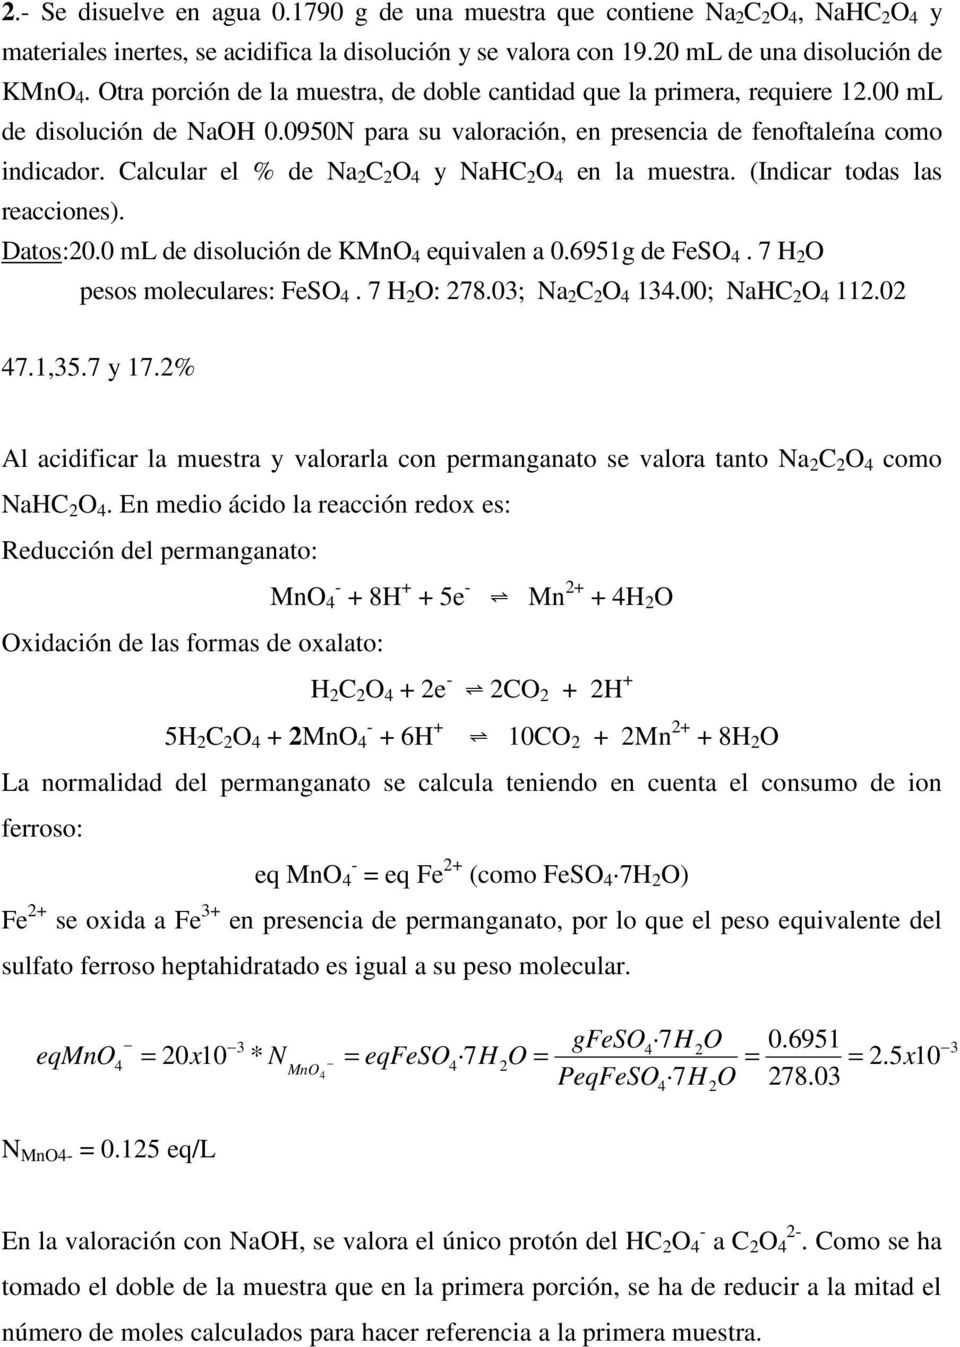 Calcular el % de Na C O 4 y NaHC O 4 en la muestra. (Indicar todas las reacciones). Datos:0.0 ml de disolución de KMnO 4 equivalen a 0.6951g de FeSO 4. 7 H O pesos moleculares: FeSO 4. 7 H O: 78.